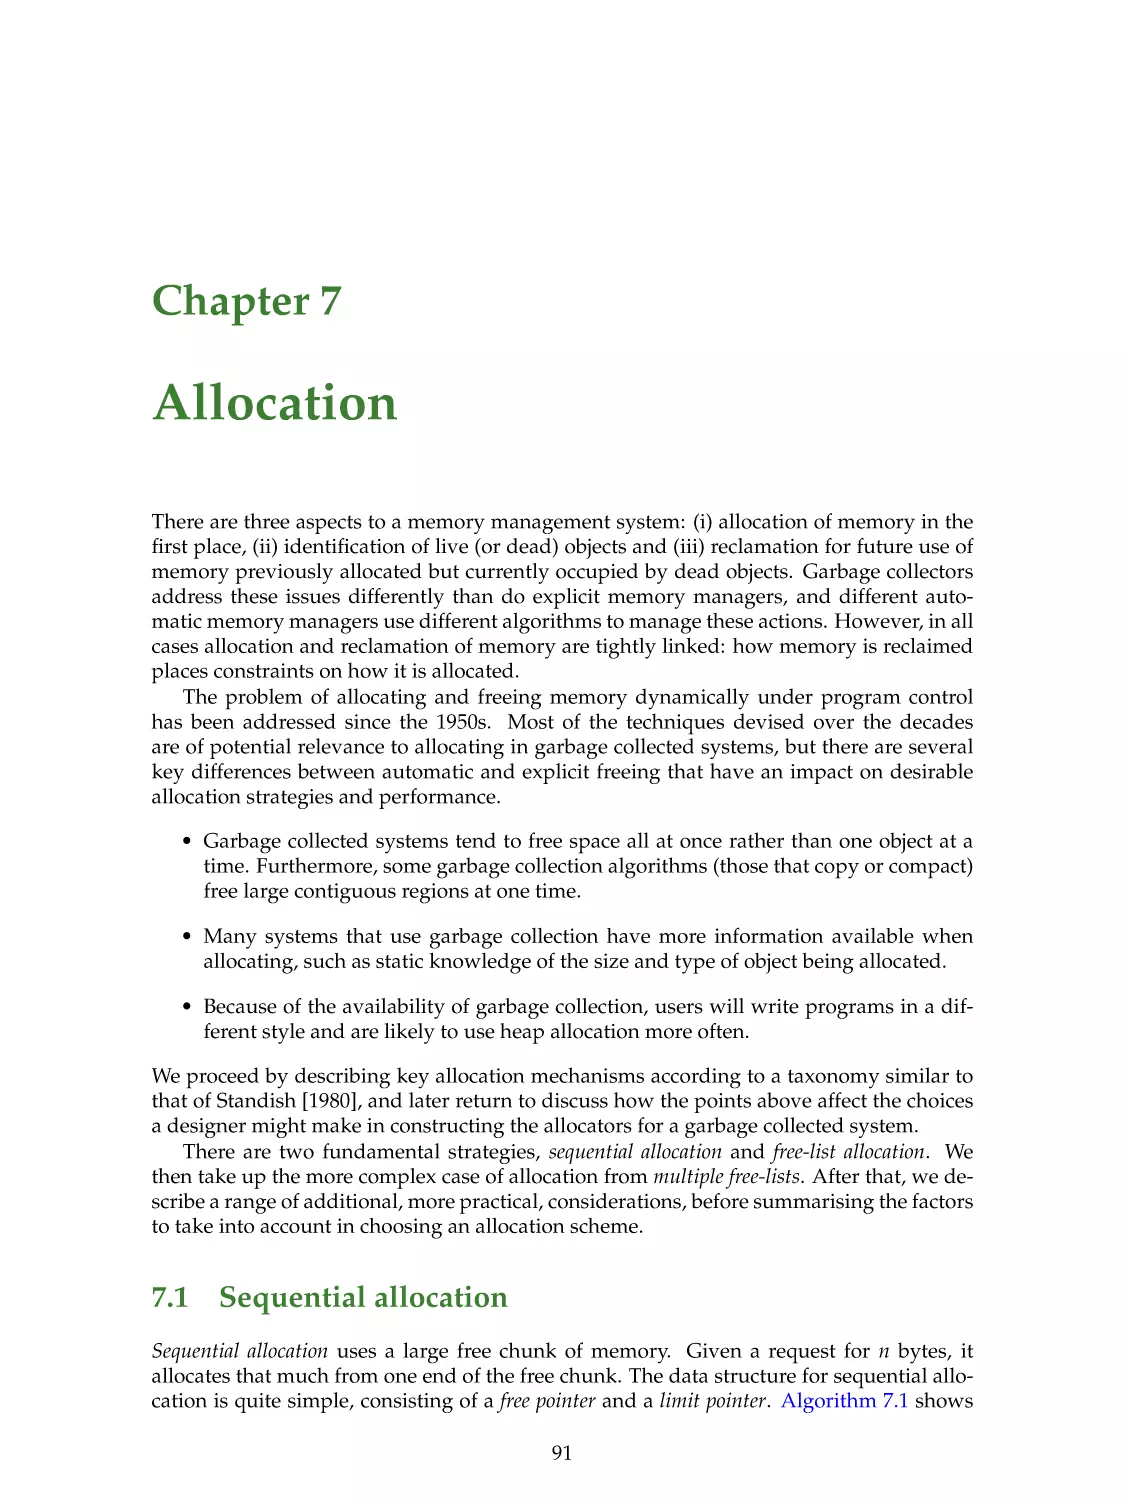 7. Allocation
7.1. Sequential allocation